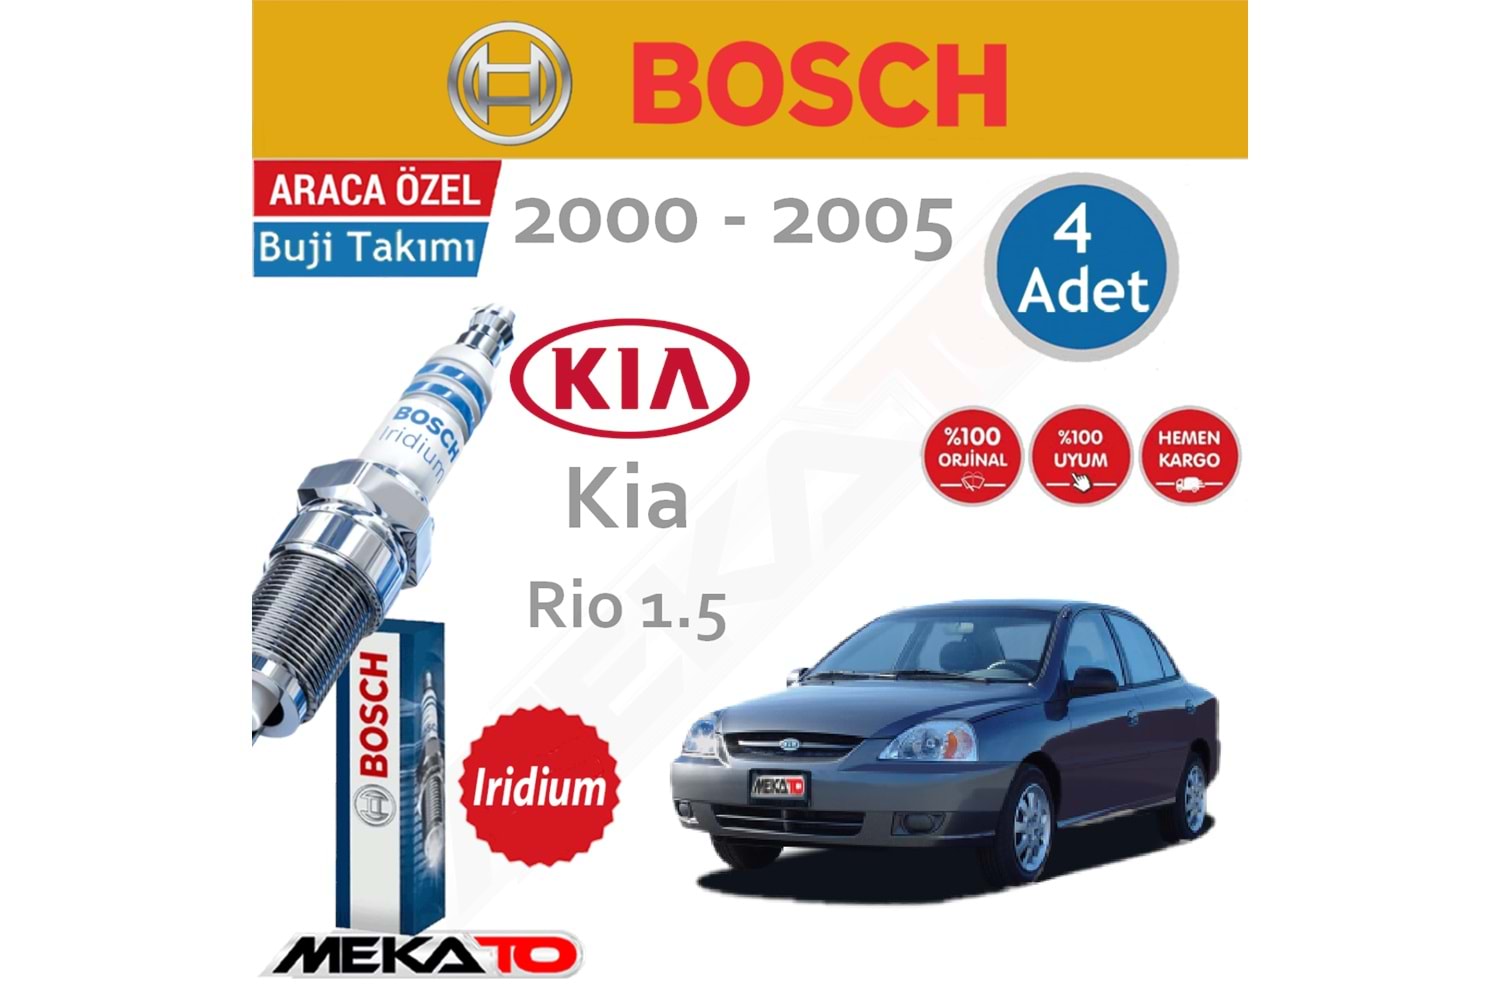 Bosch Kia Rio Lpg (1.5) İridyum (2000-2005) Buji Takımı 4 Ad.